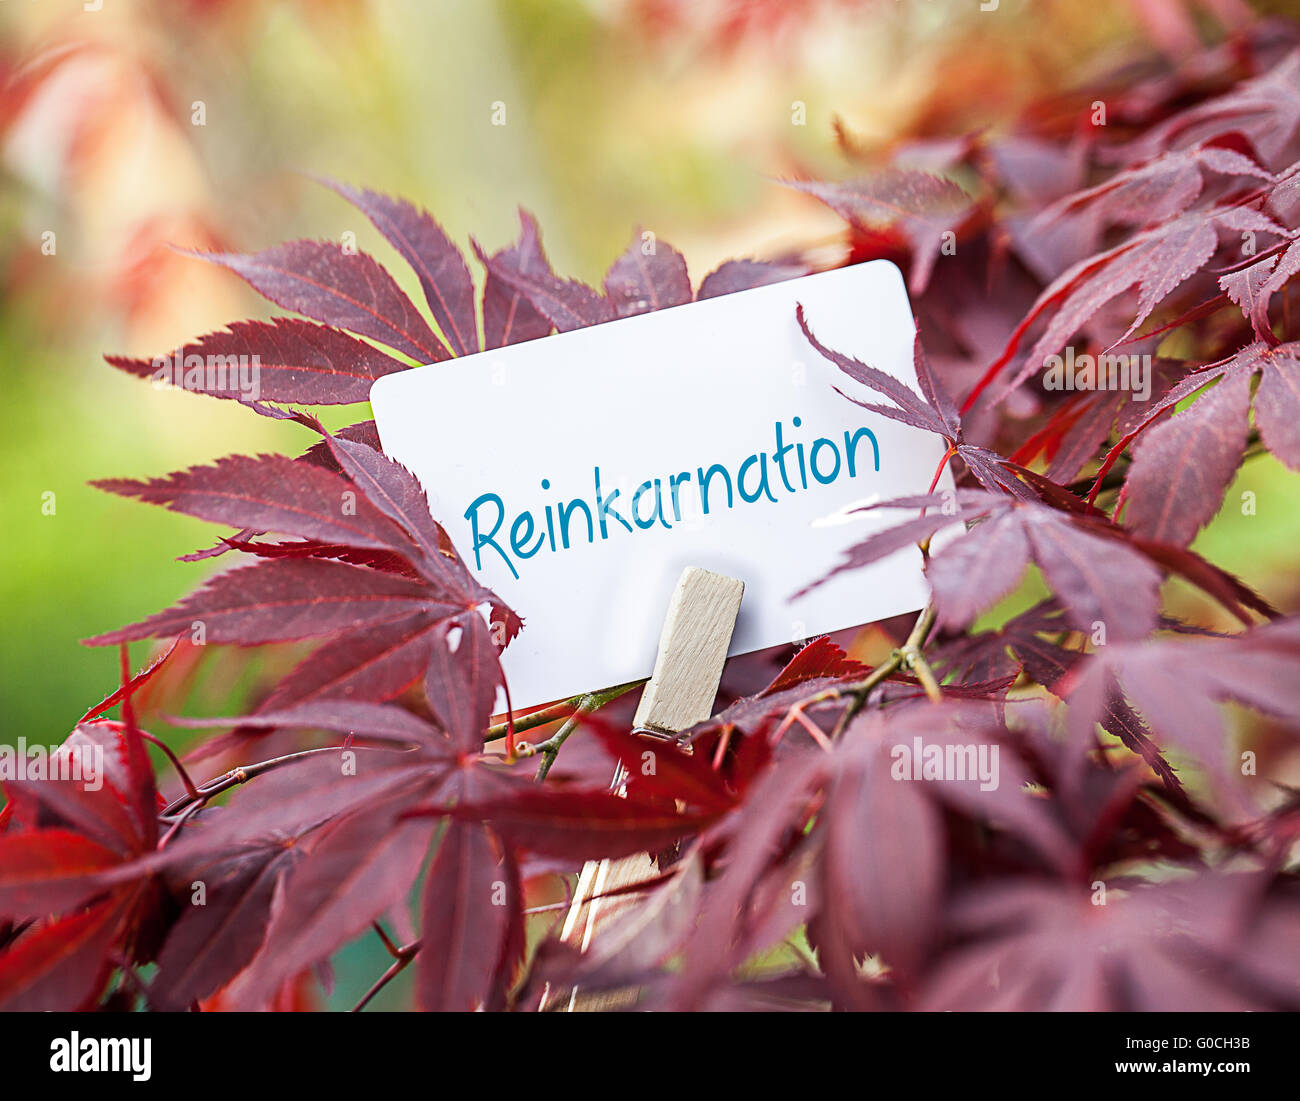 The Word  “Reinkarnation“ in a fan-maple tree Stock Photo